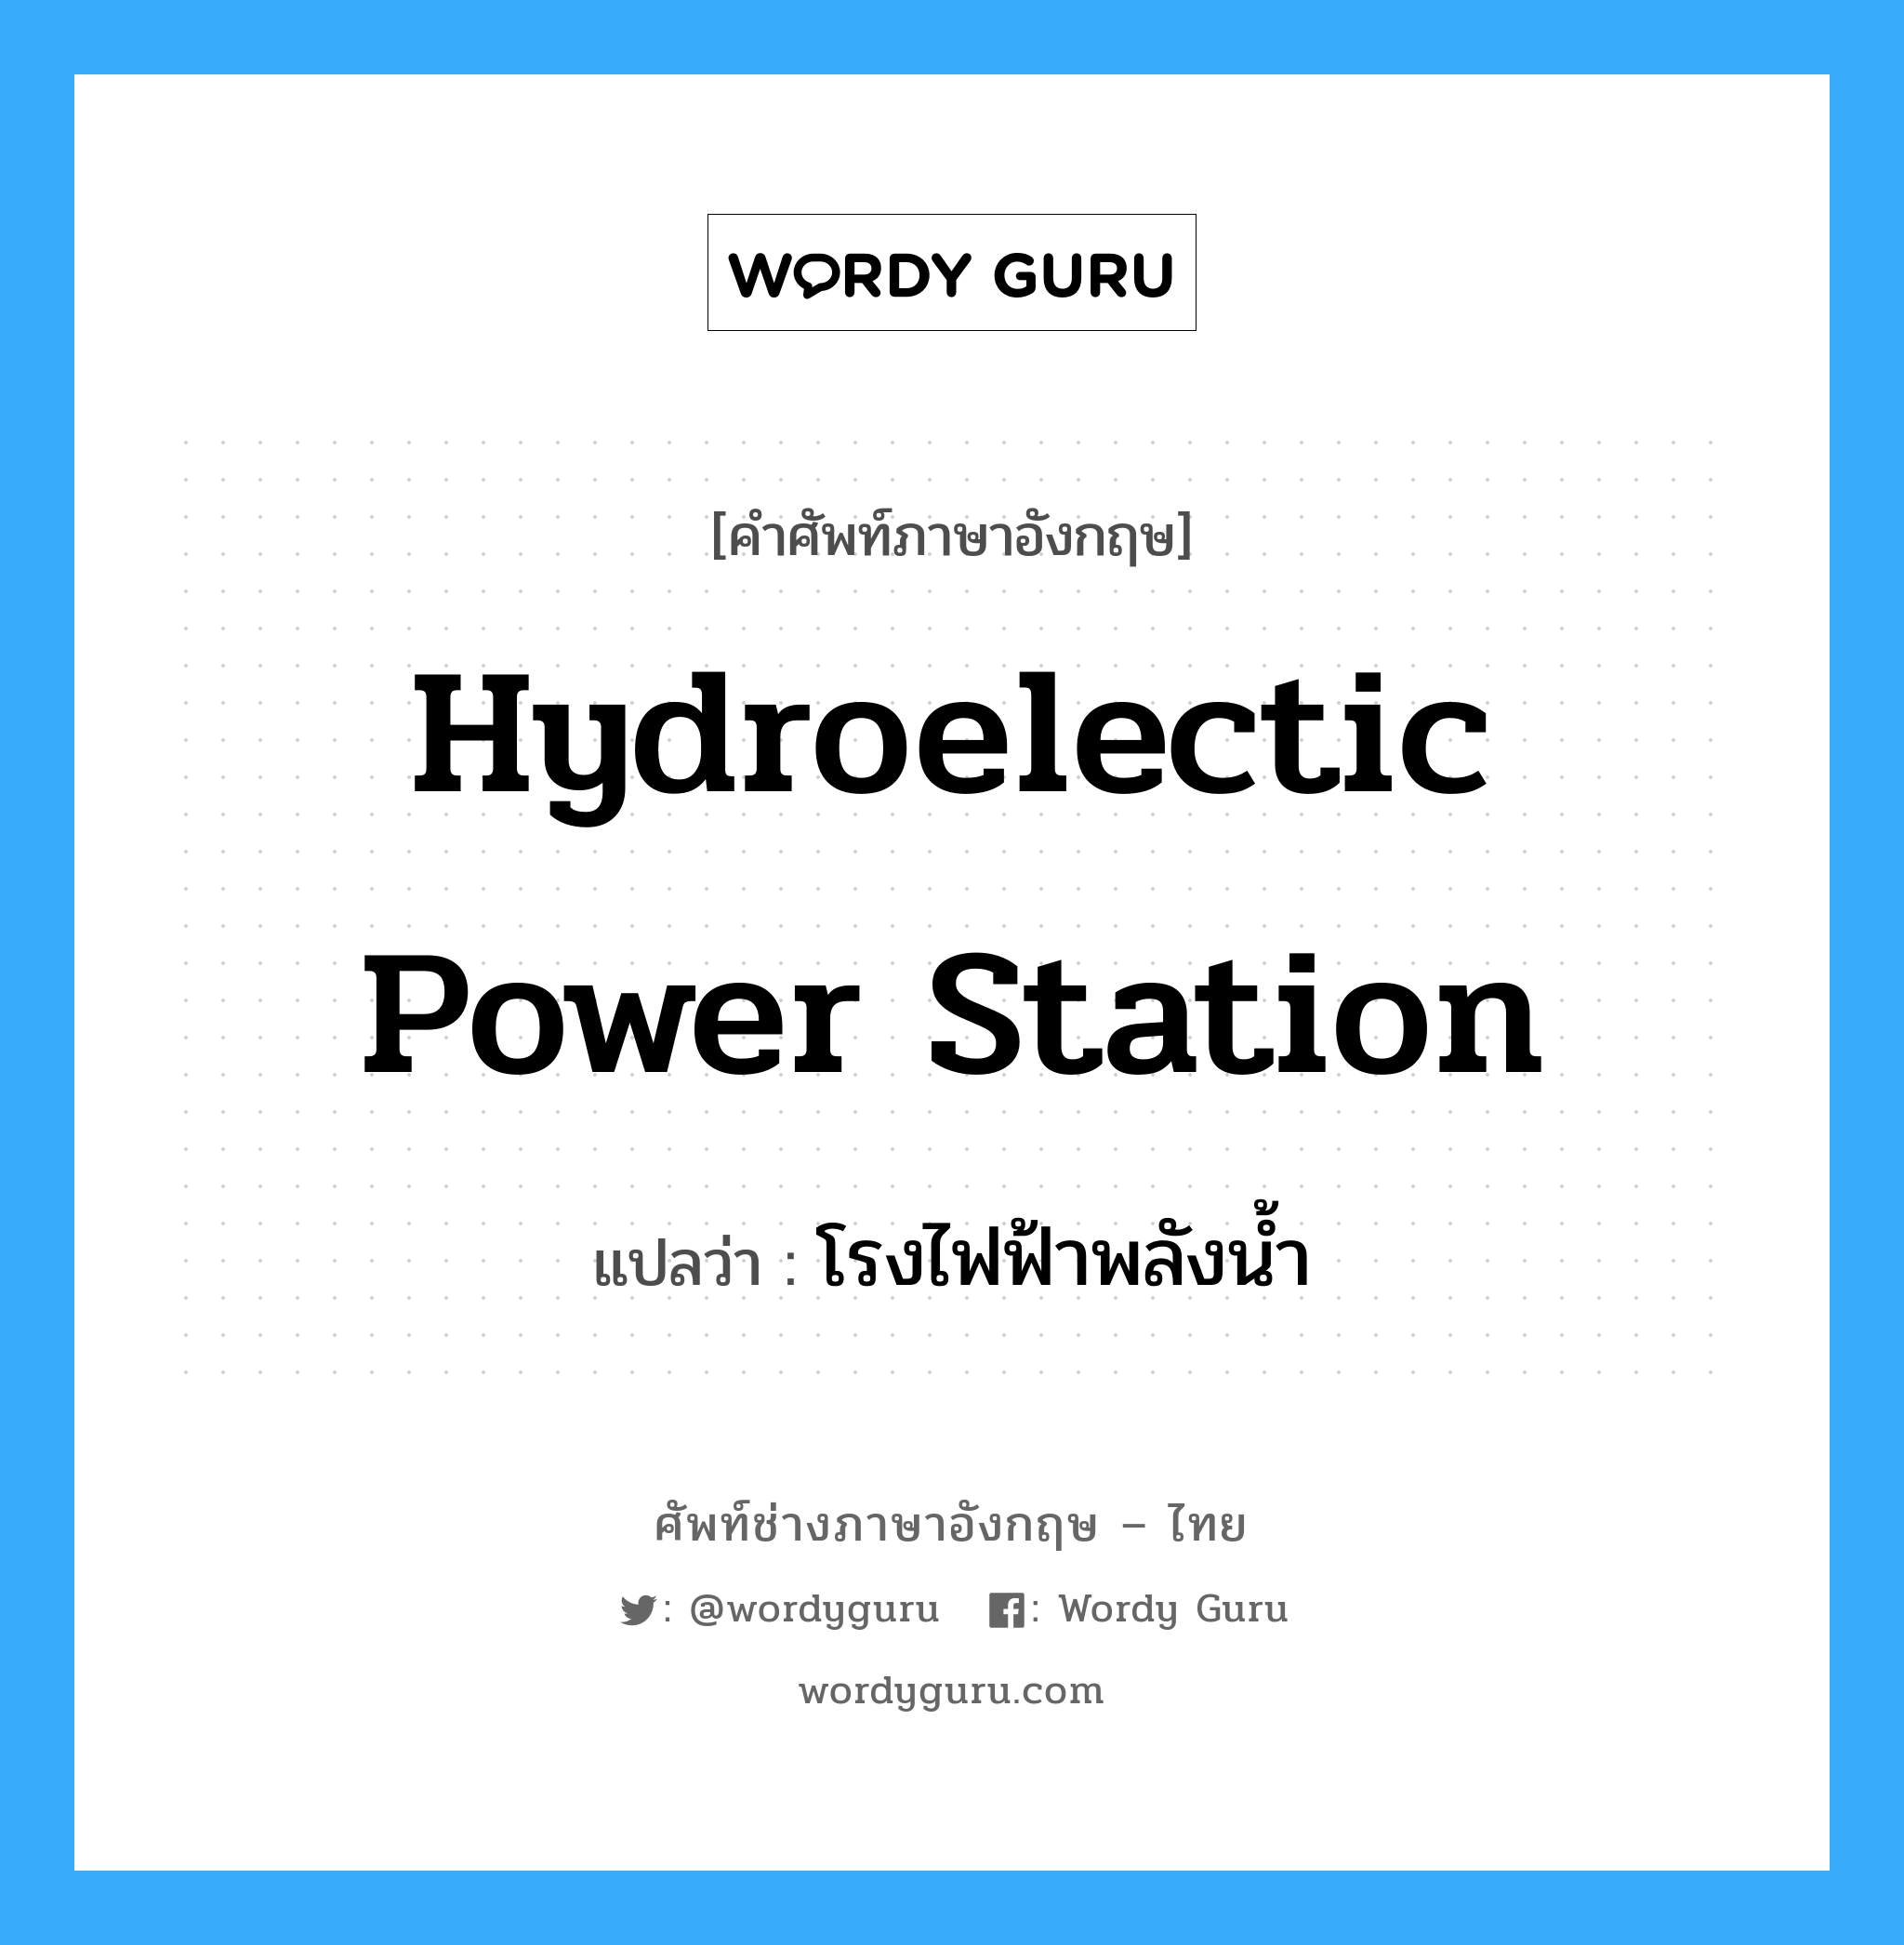 โรงไฟฟ้าพลังน้ำ ภาษาอังกฤษ?, คำศัพท์ช่างภาษาอังกฤษ - ไทย โรงไฟฟ้าพลังน้ำ คำศัพท์ภาษาอังกฤษ โรงไฟฟ้าพลังน้ำ แปลว่า hydroelectic power station